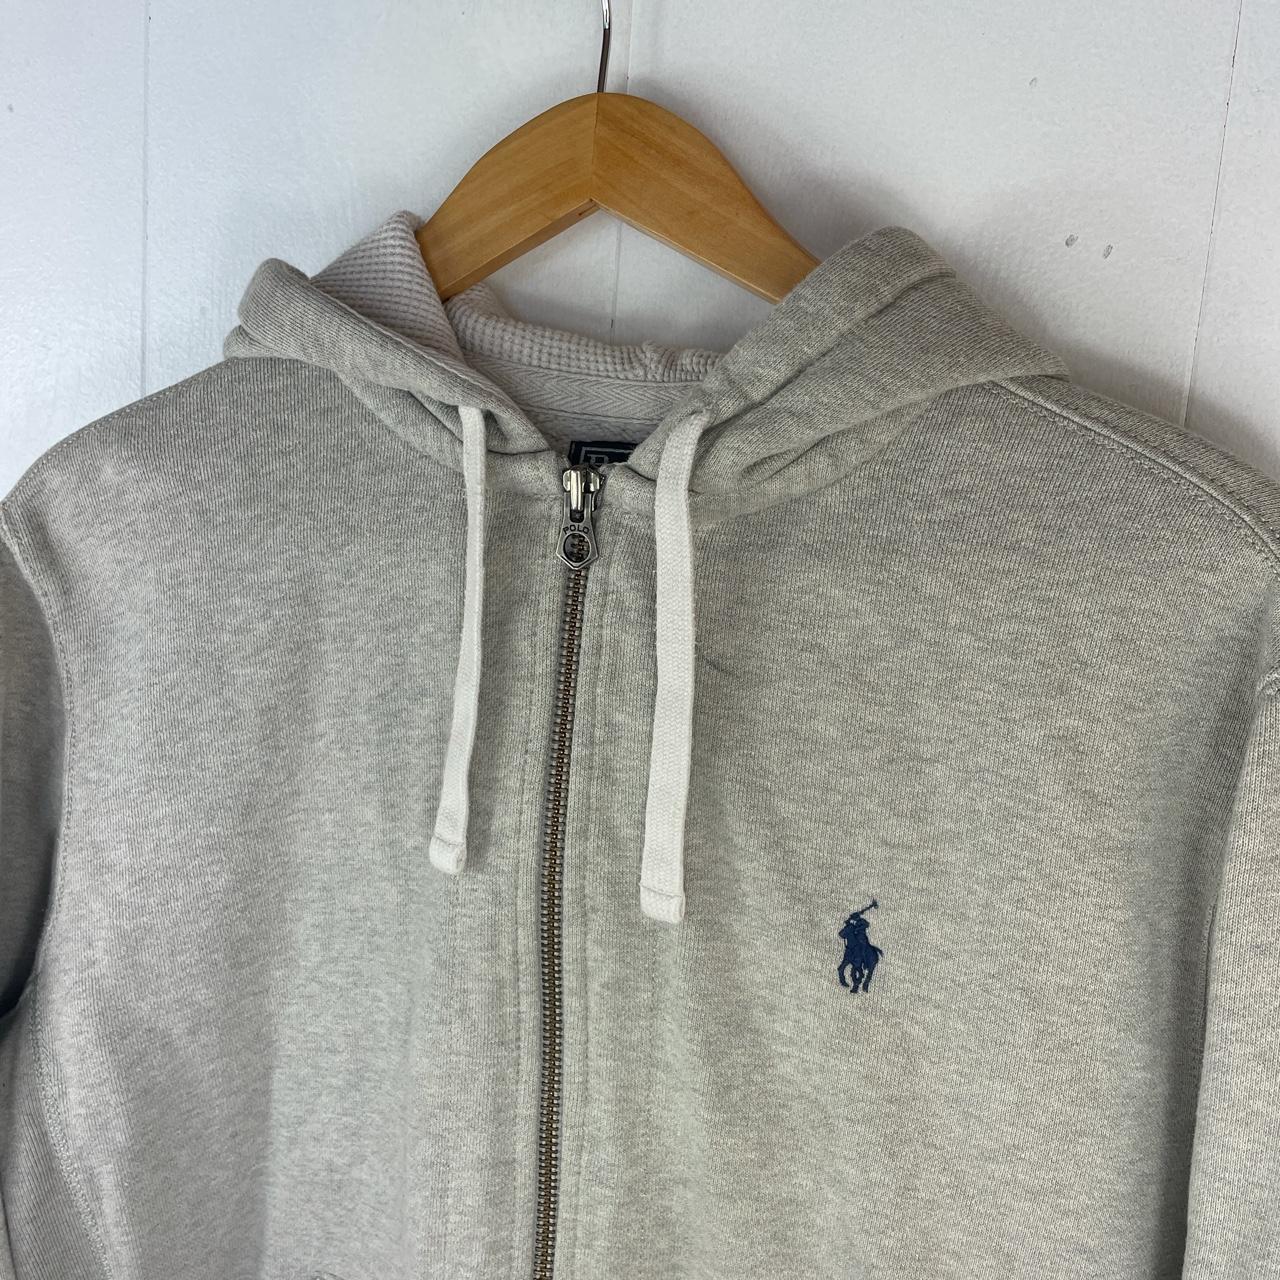 Polo Ralph Lauren zip hoodie in light grey, with... - Depop